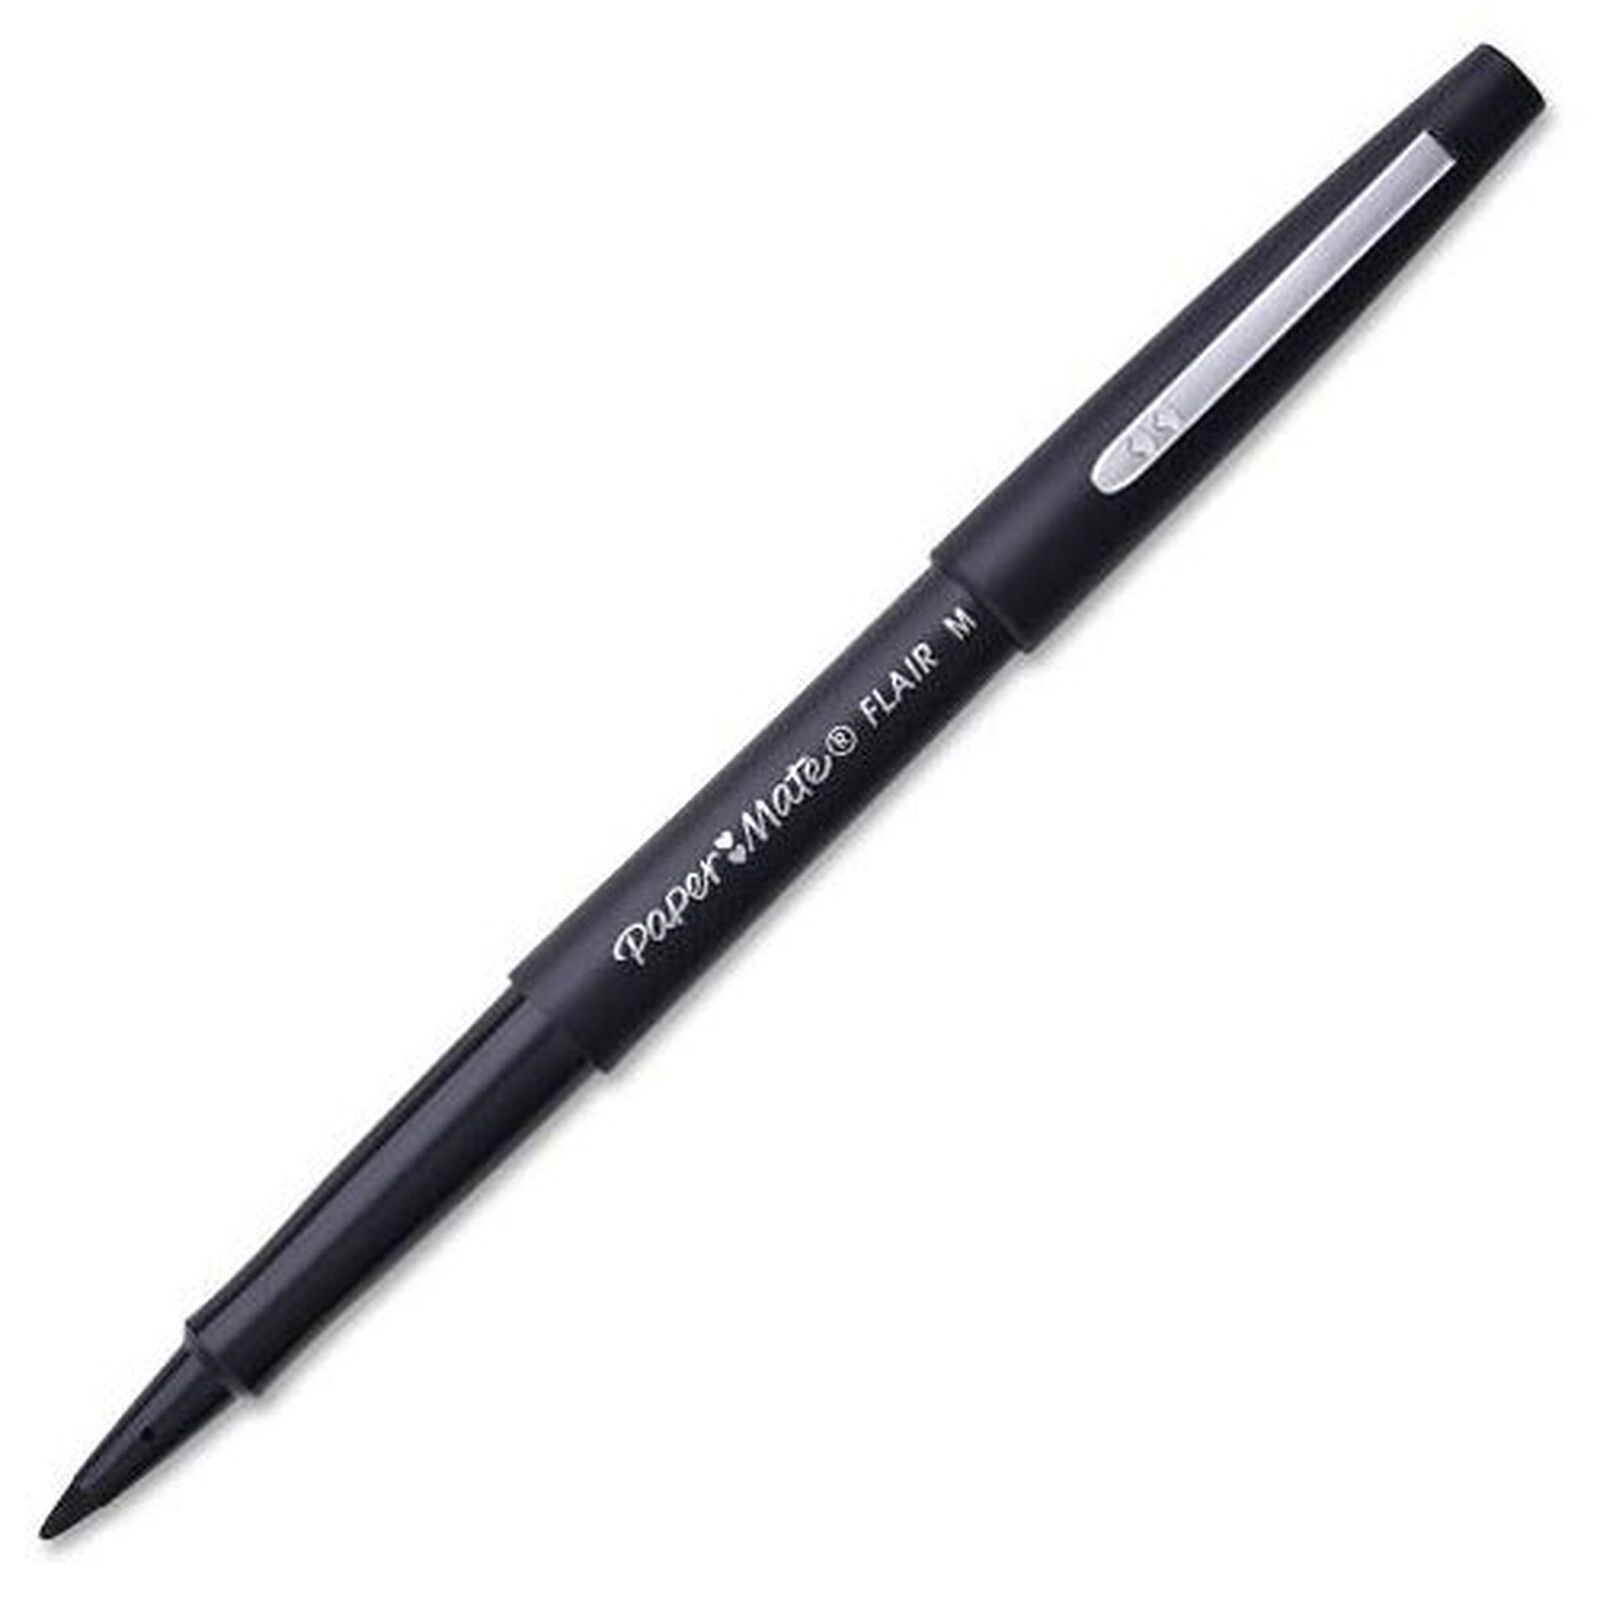 PAPERMATE Flair stylo feutre noir - Stylo & feutre - Garantie 3 ans LDLC